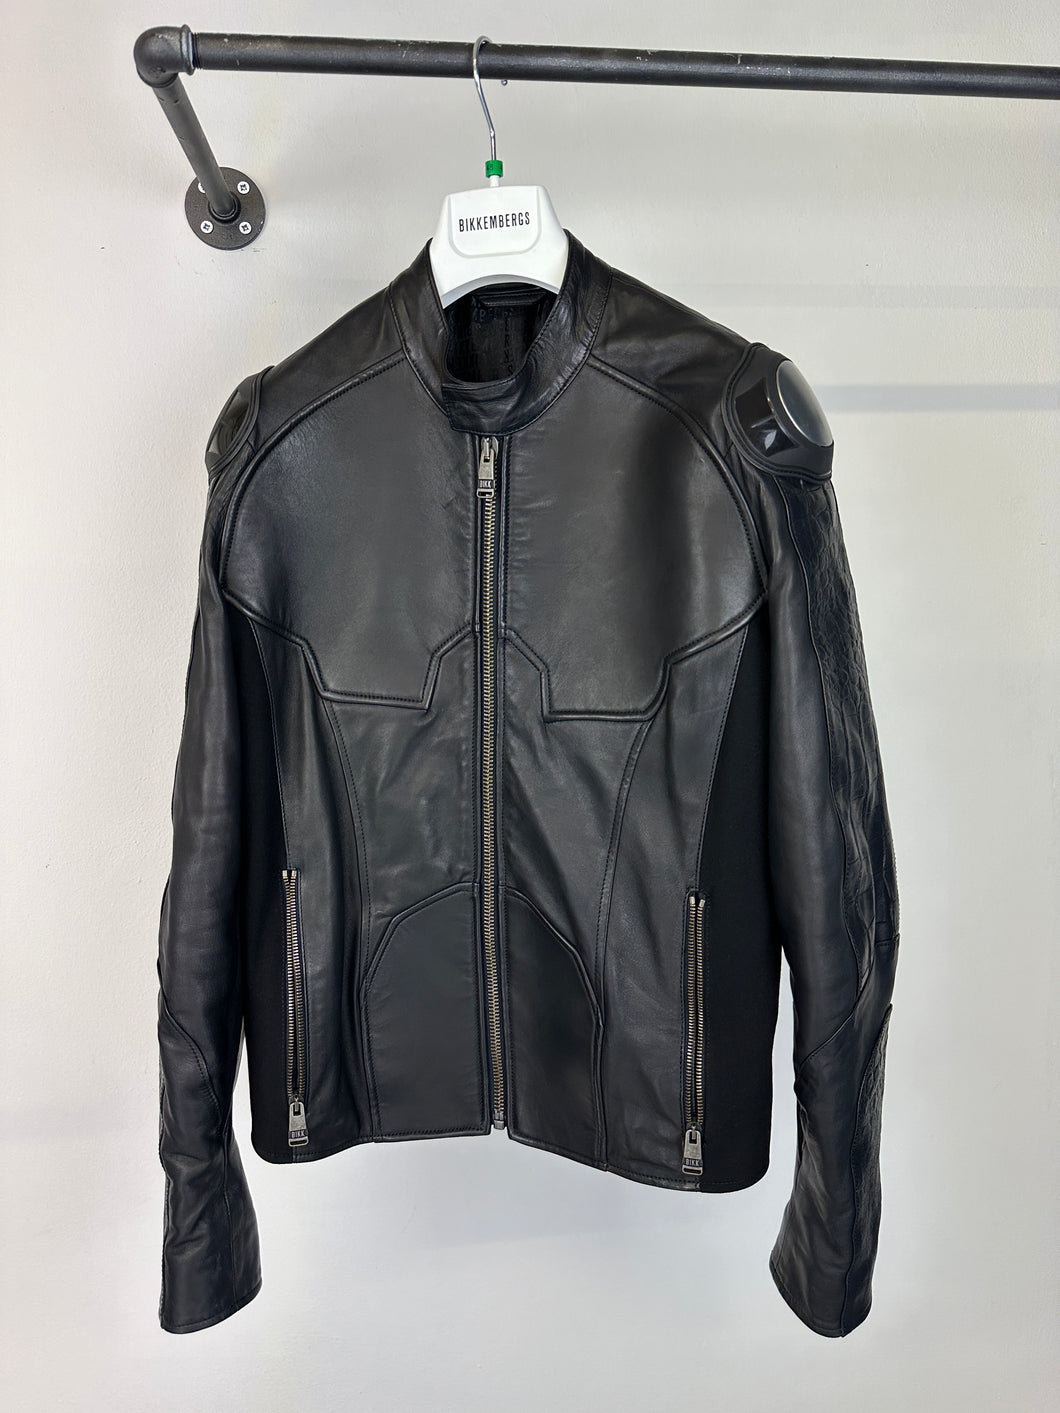 2000s Dirk Bikkembergs muscle reinforced leather jacket